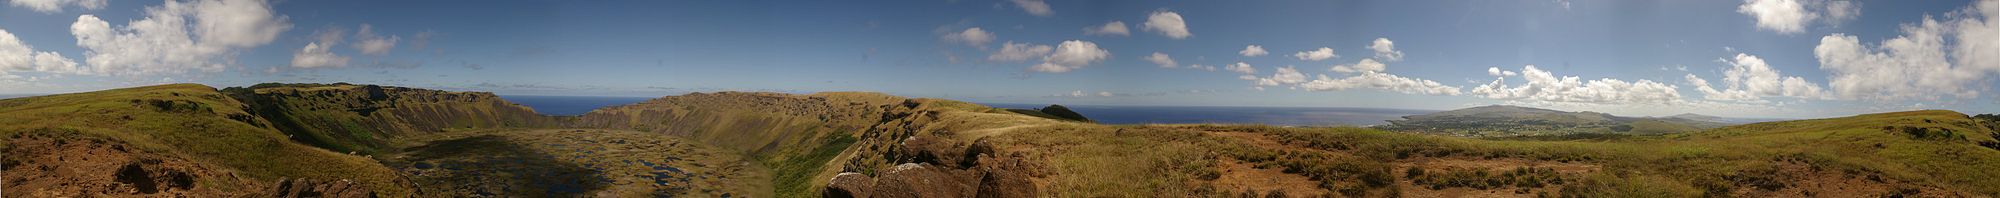 Пасха утрауы панорамаһы Рано-Кау кратеры сигенән